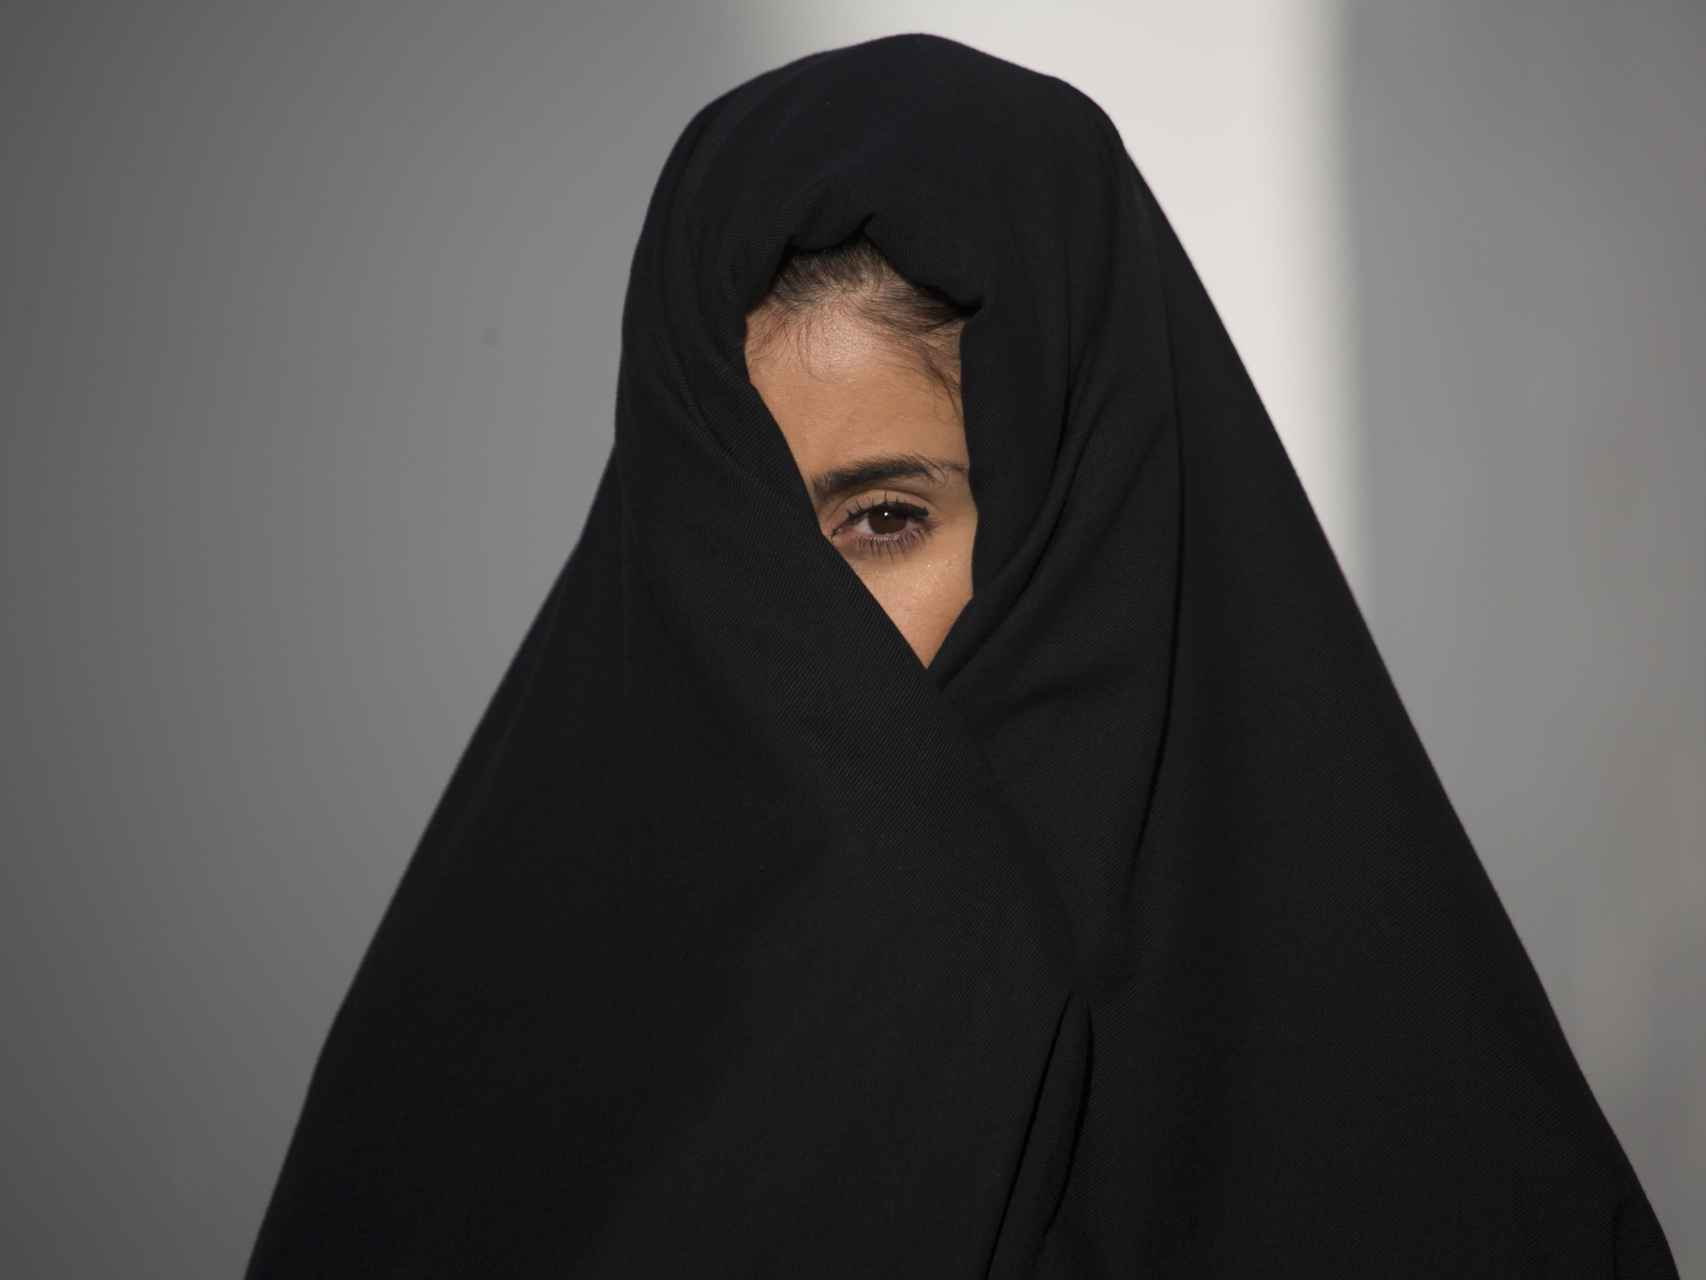 Pese al parecido que mantiene con el burka, la cobijada tiene origen castellano.